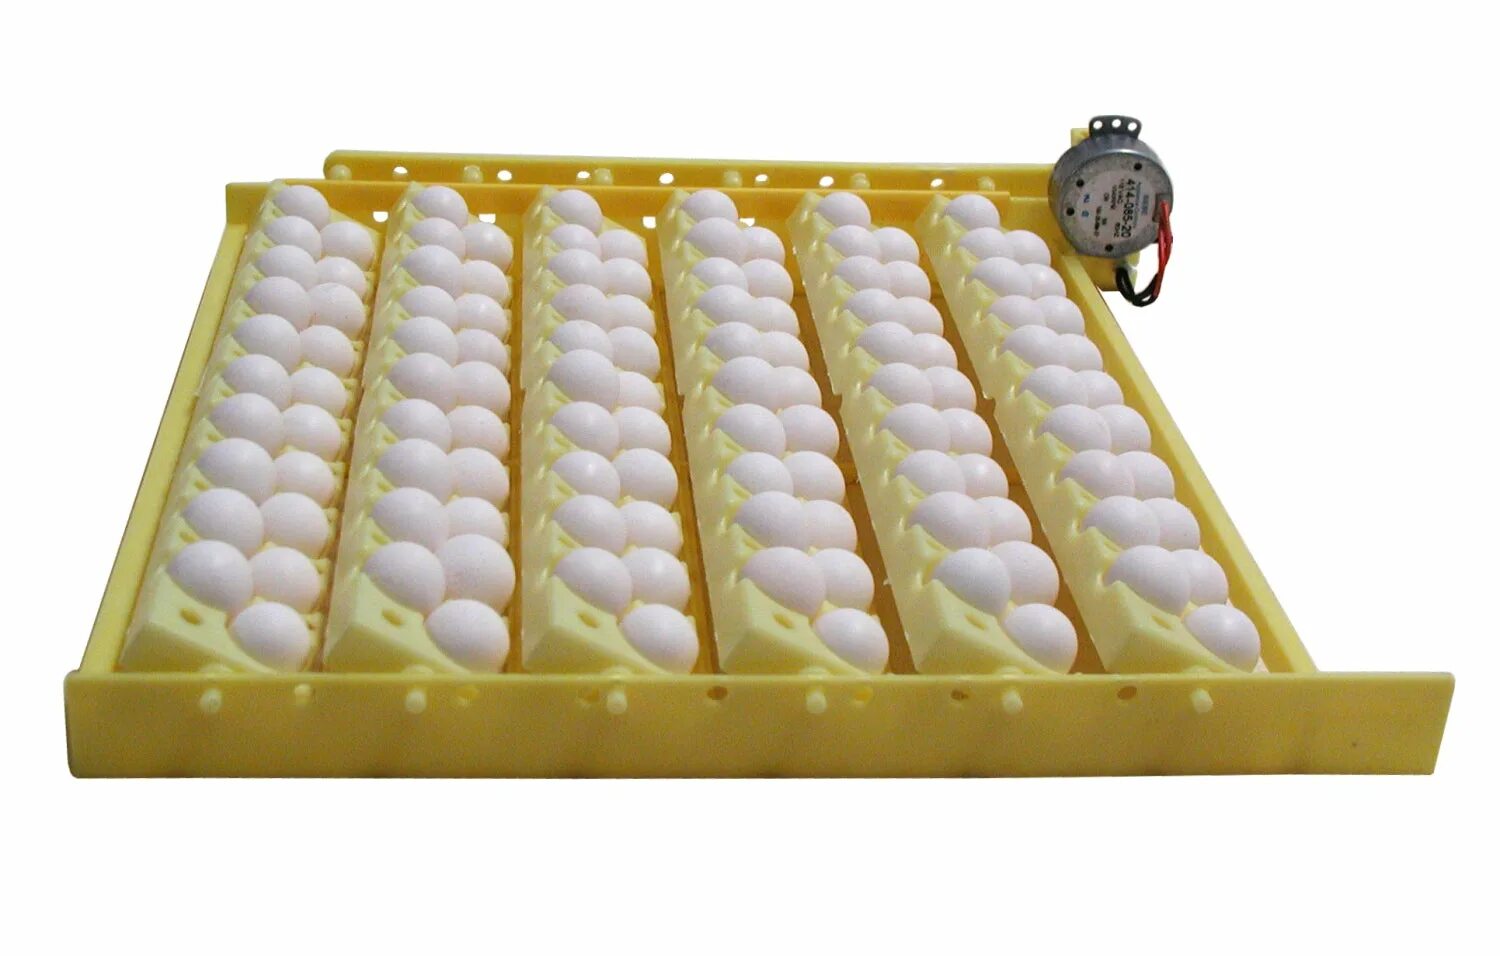 Рейтинг инкубаторов с автоматическим переворотом. Инкубатор Egg incubator. Инкубатор Hova Bator. Инкубатор FLORAFLEX incubator Kit. Инкубатор "WQ-24".